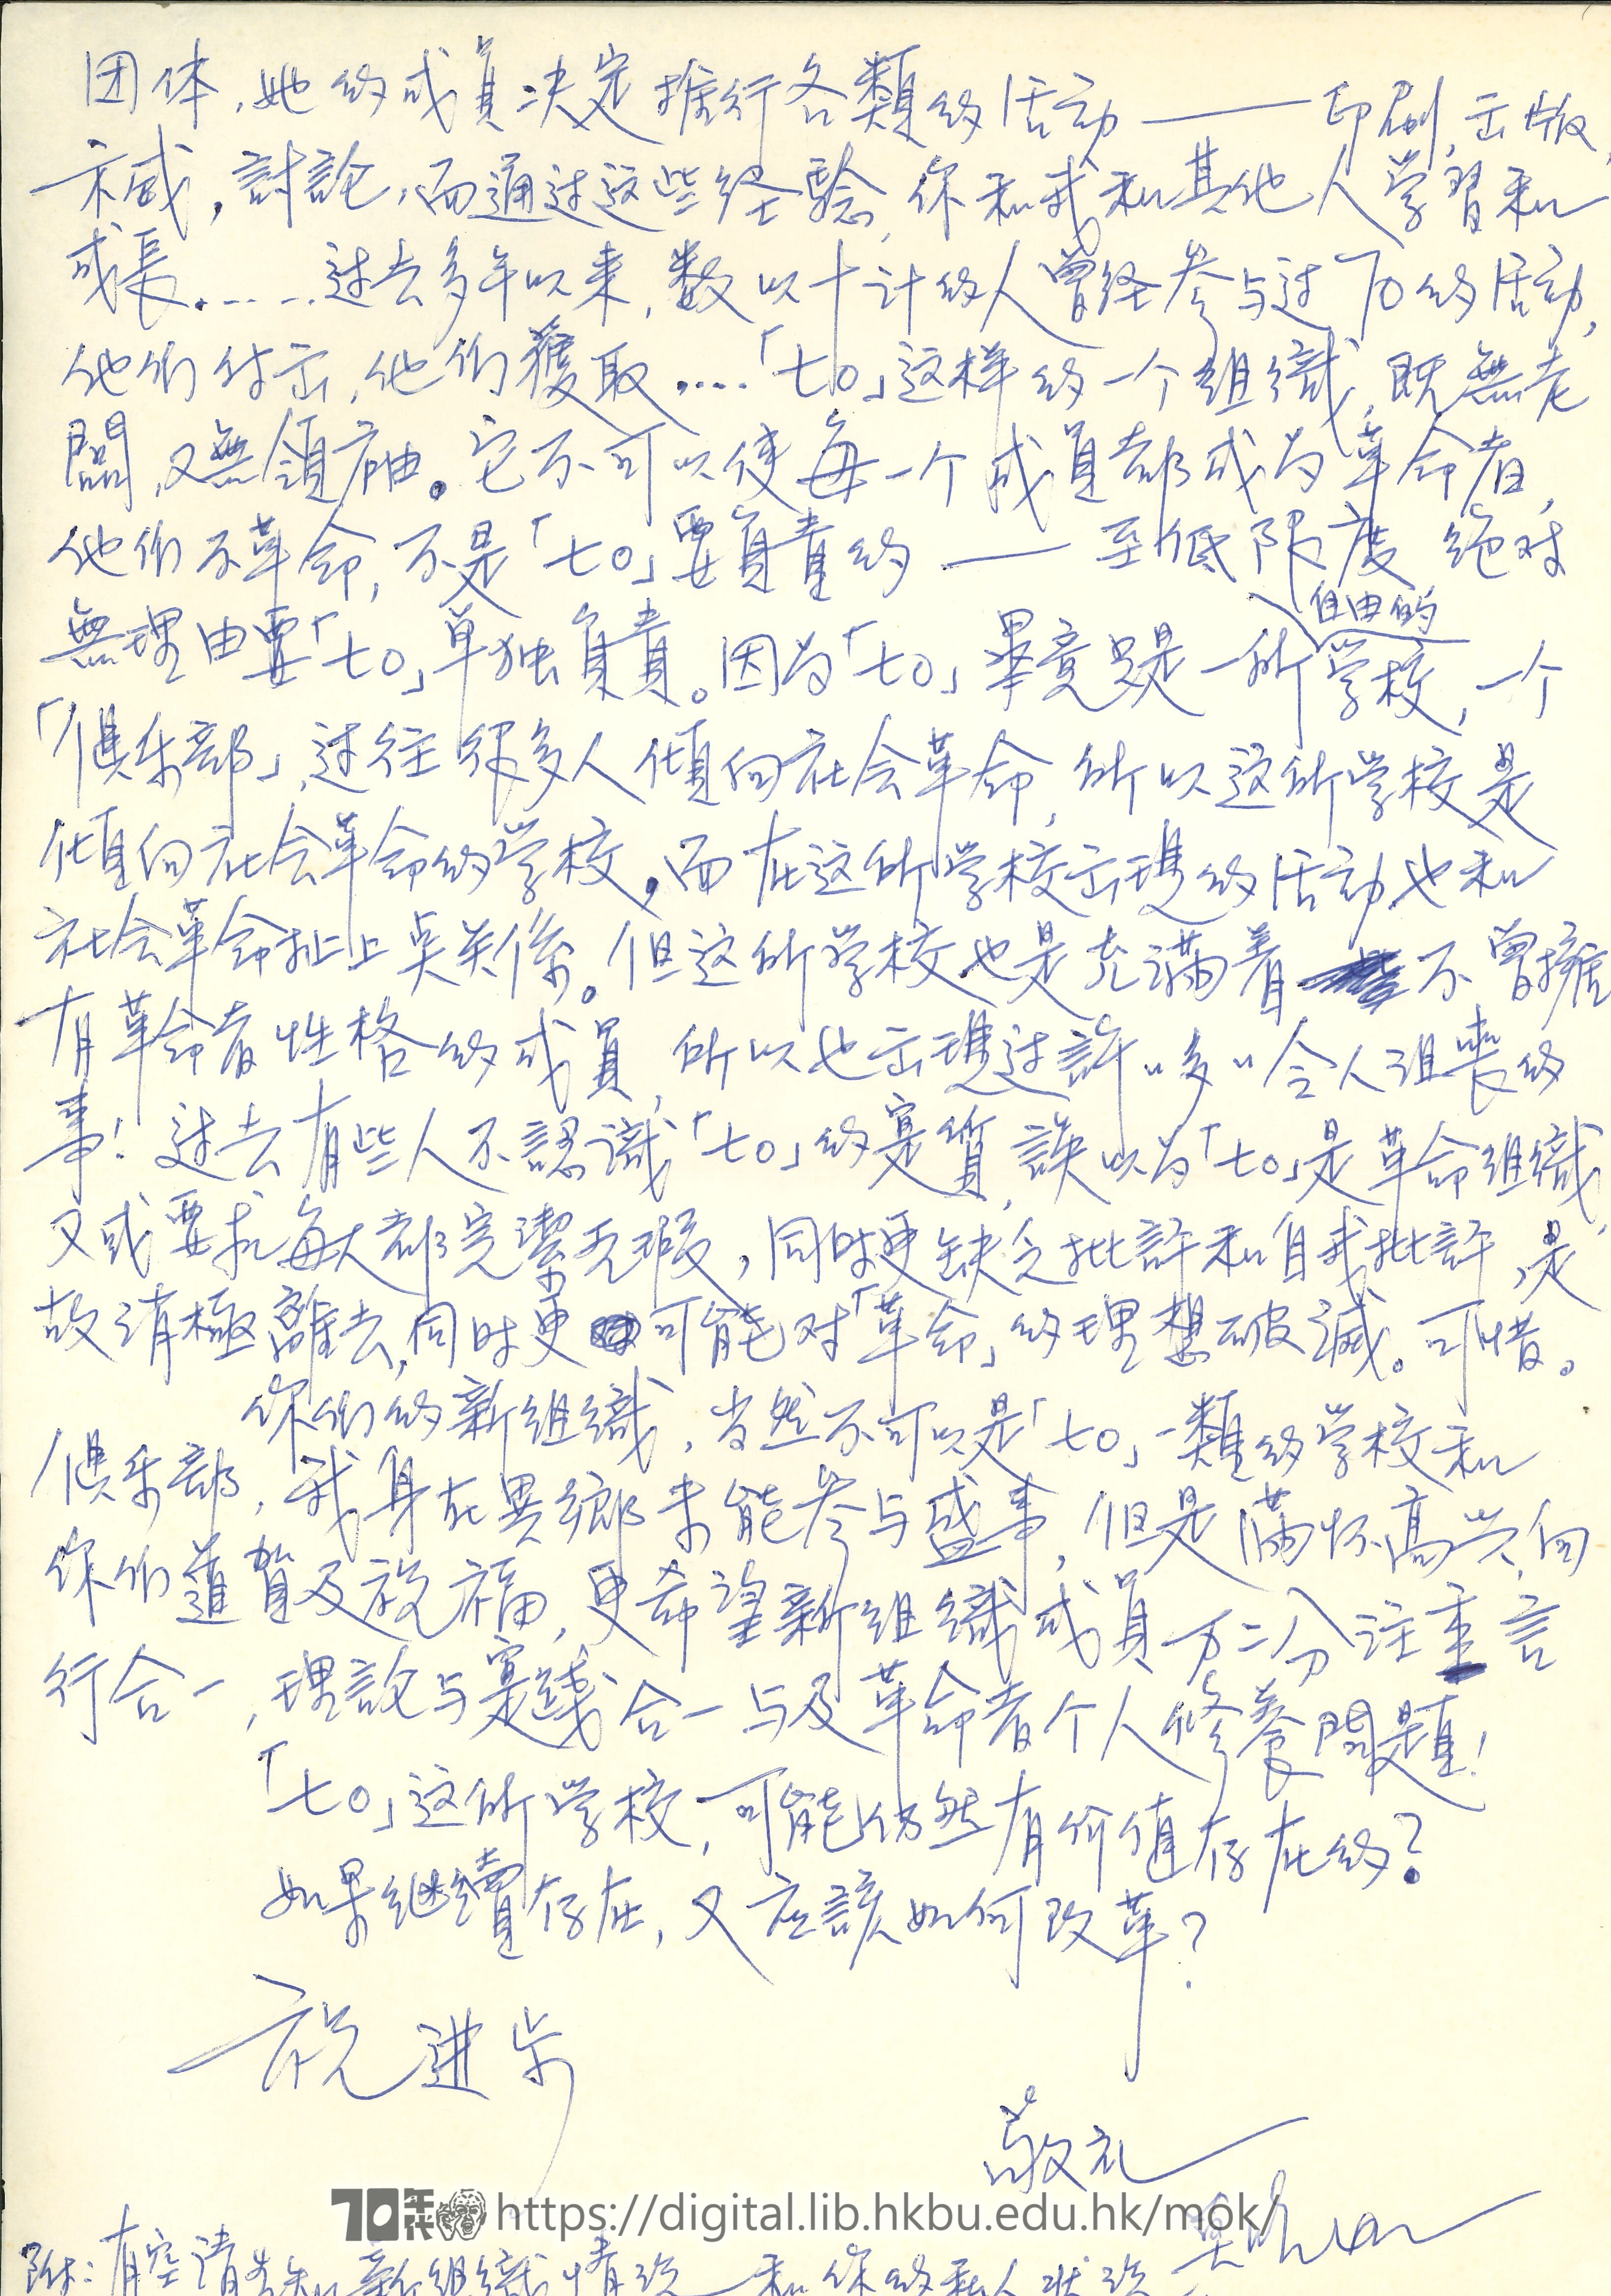   Letter from Mok Chiu Yu to Tom MOK, Chiu Yu 